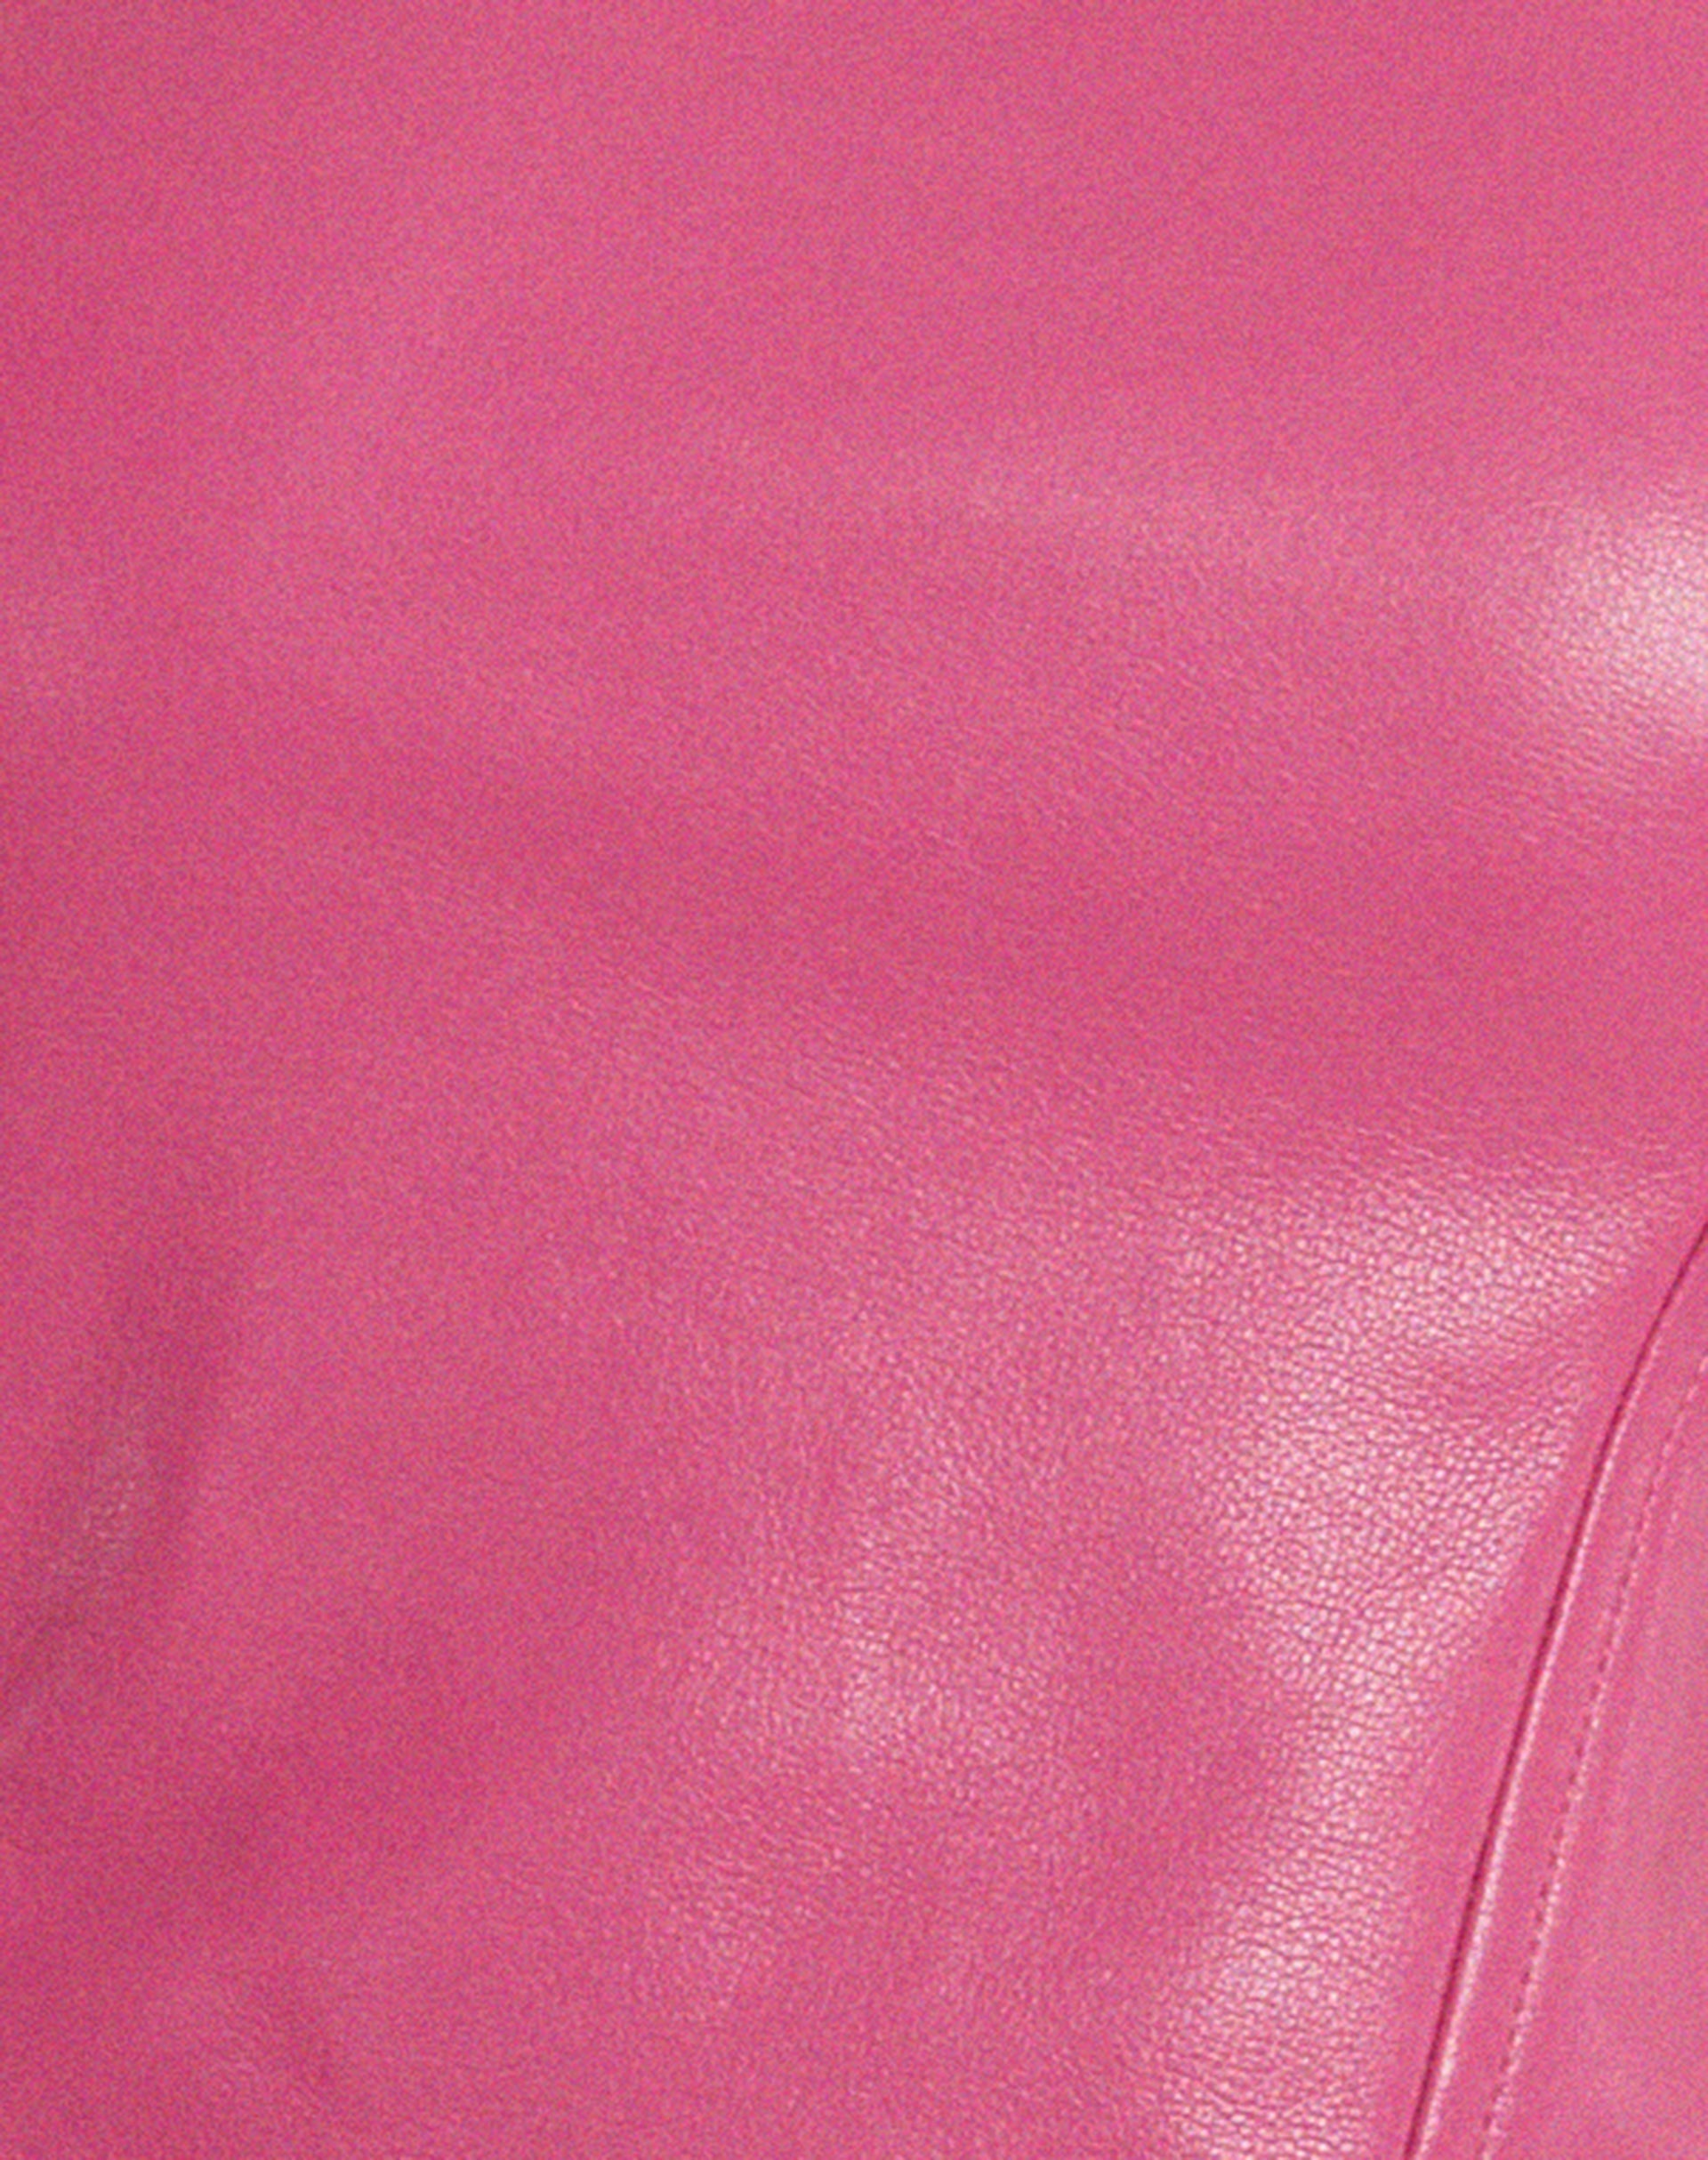 Dena Corset Top in PU Hot Pink